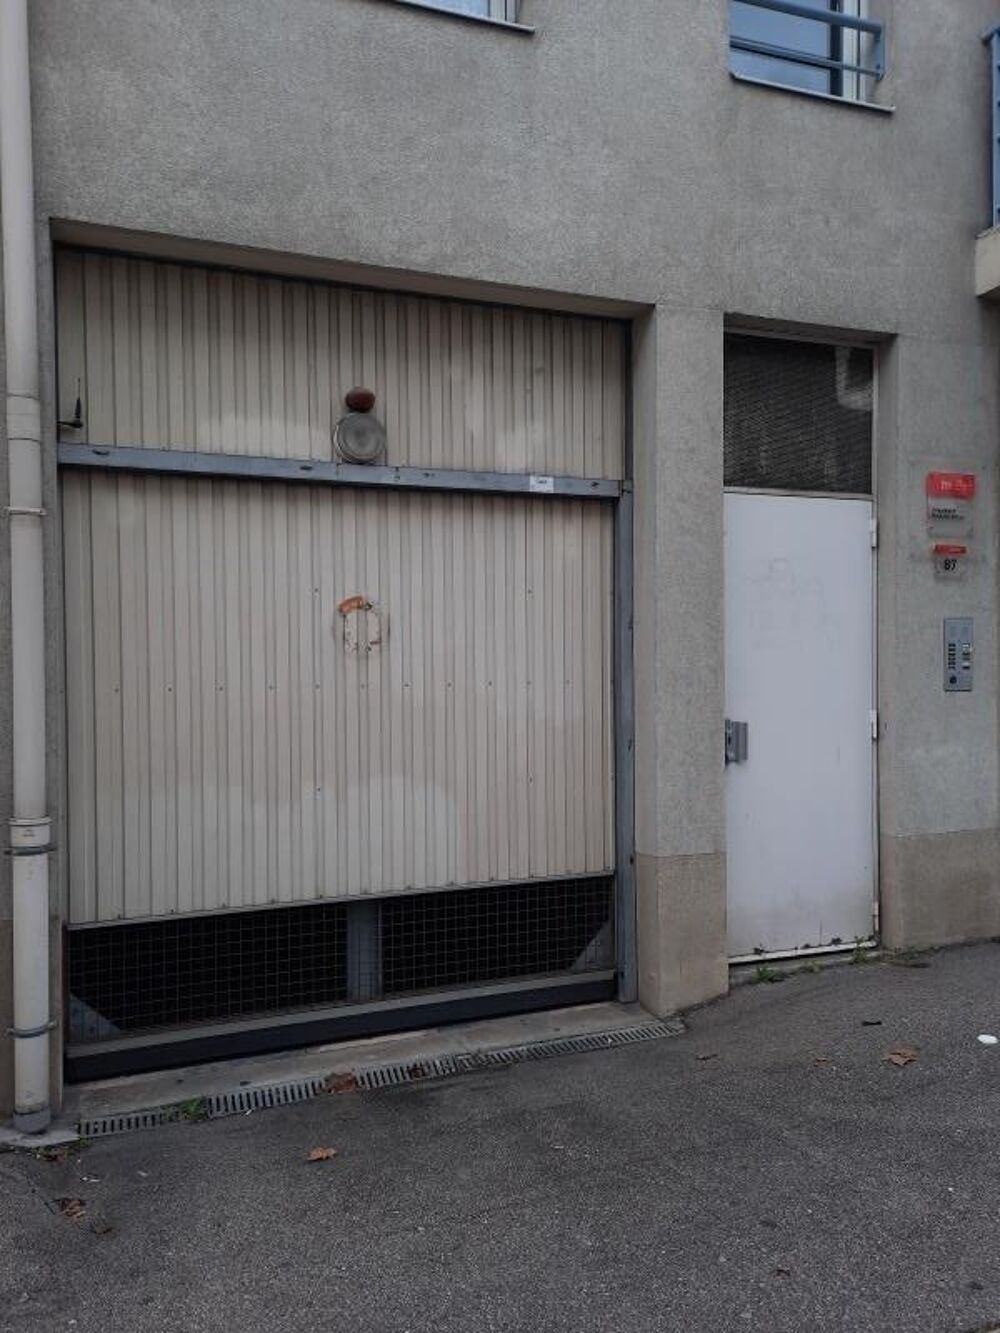 Location Parking/Garage CASE DE PARKING NON PROTE LYON 03 - 0 m2 Lyon 3